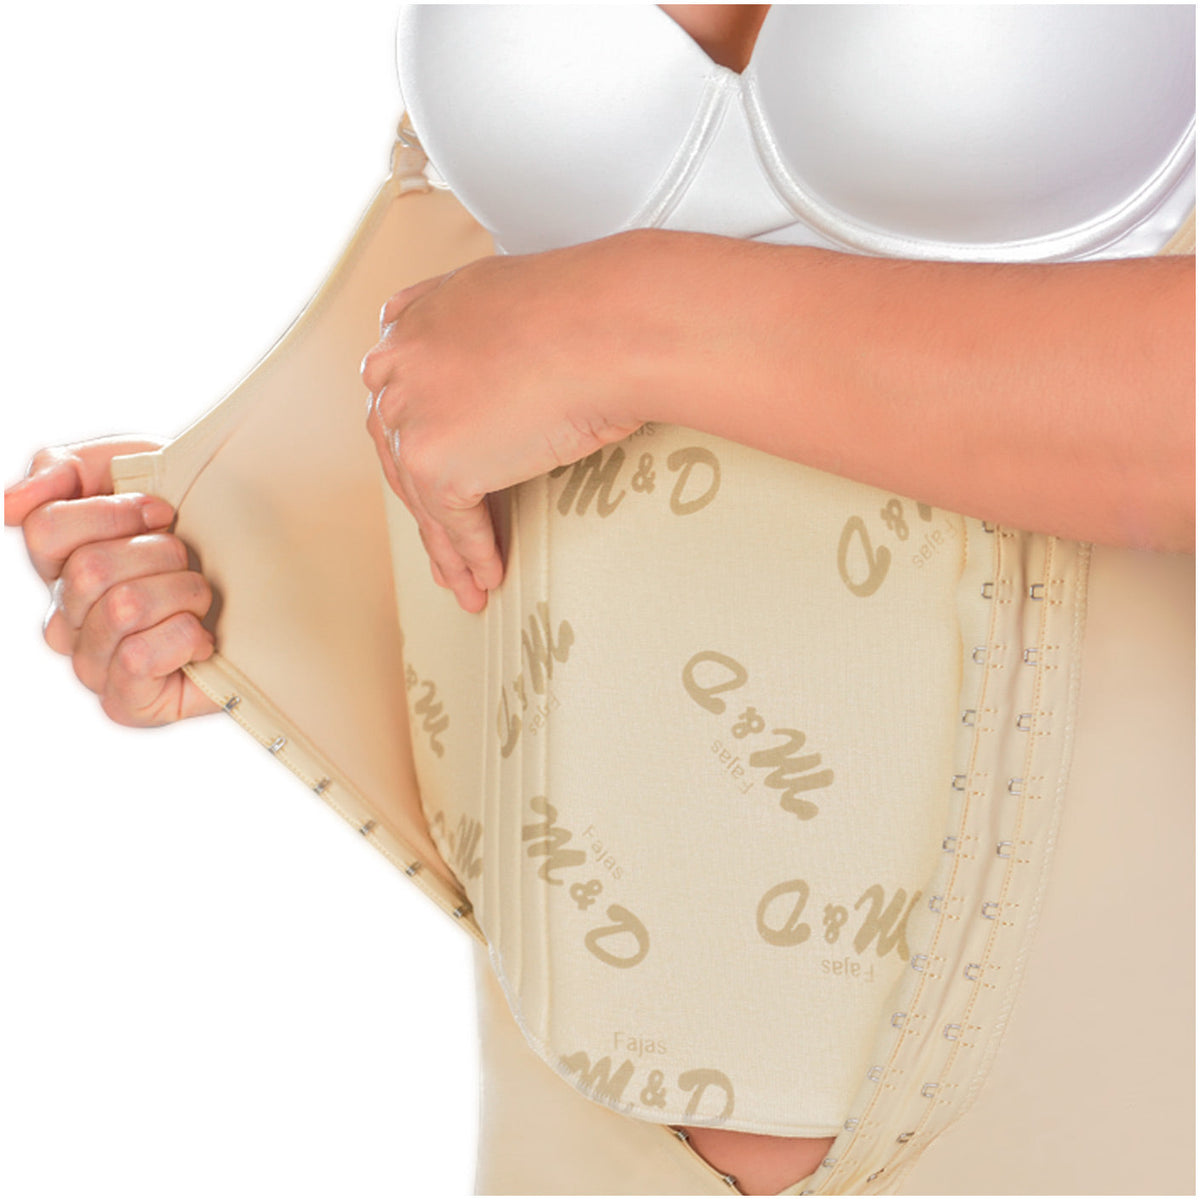 Fajas MYD 0102 | Tabla de liposucción de compresión abdominal